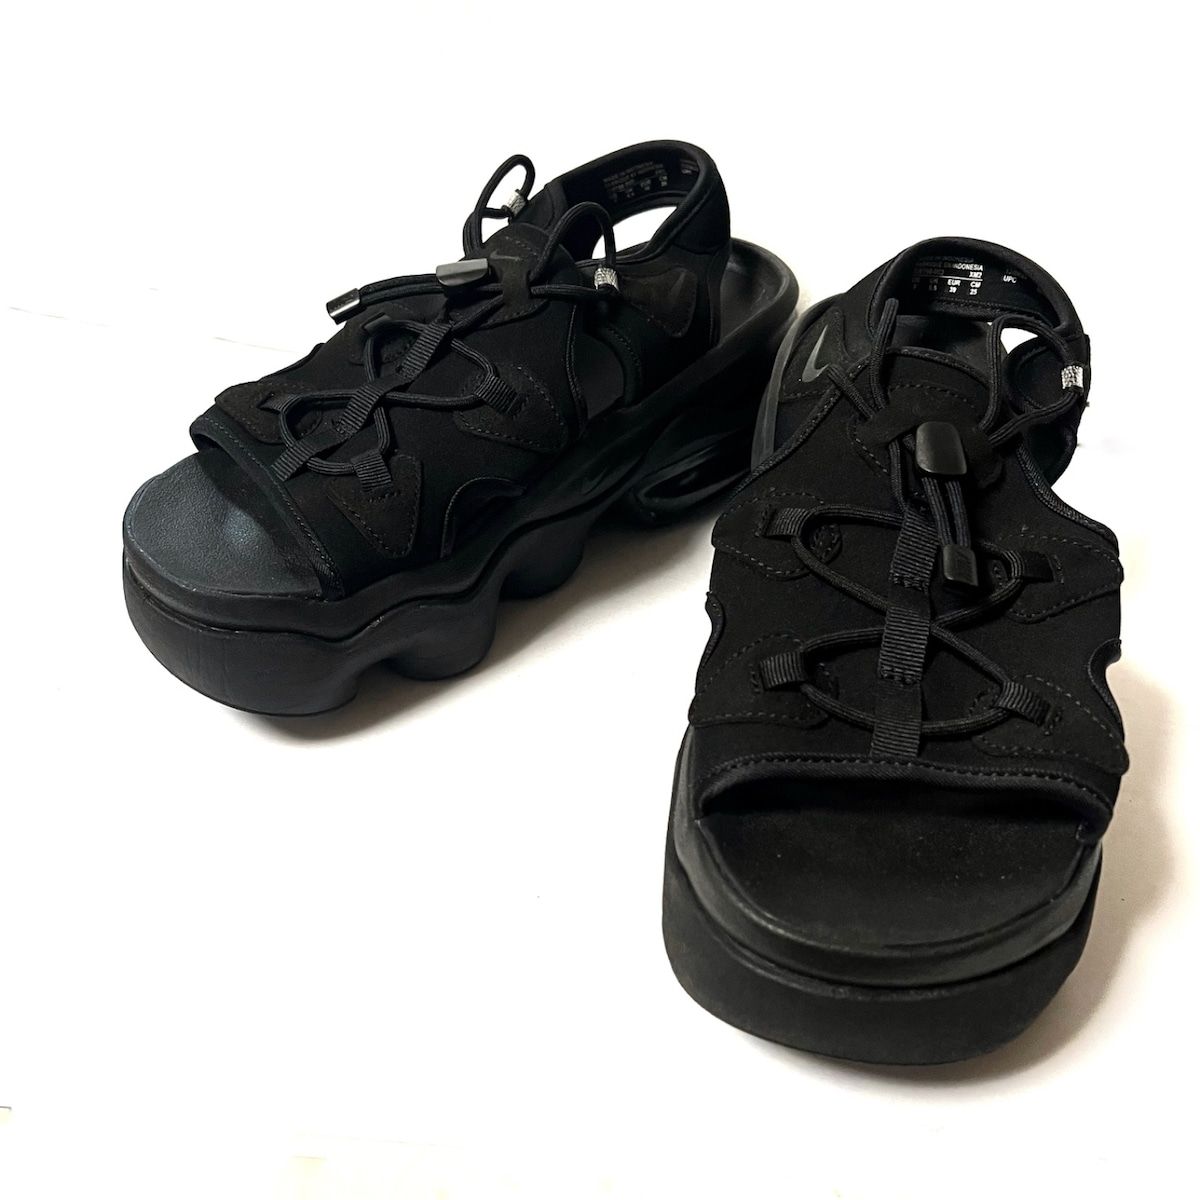 NIKE(ナイキ) サンダル 25 レディース - C18798-003 黒 化学繊維靴/シューズ 5251円